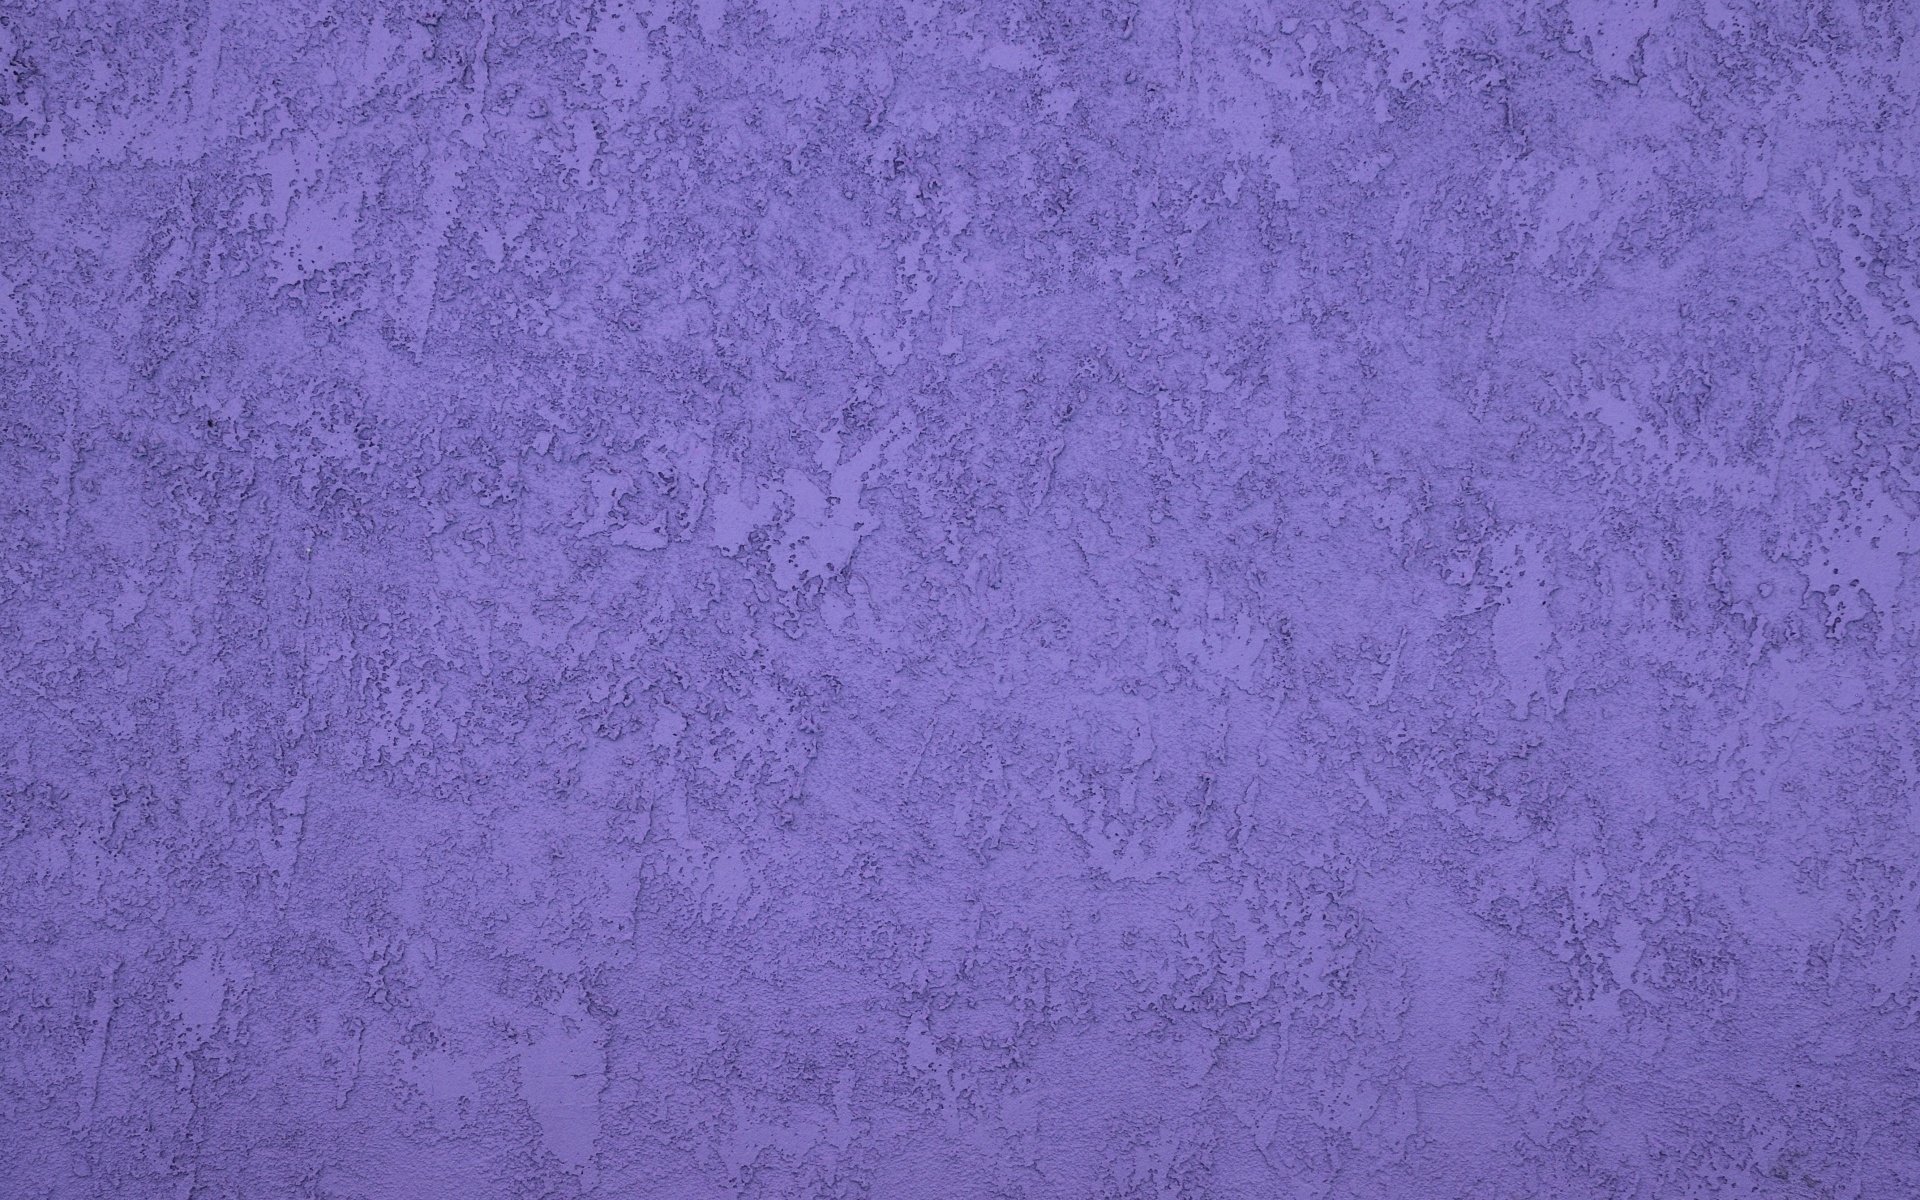 Фиолетовая стена